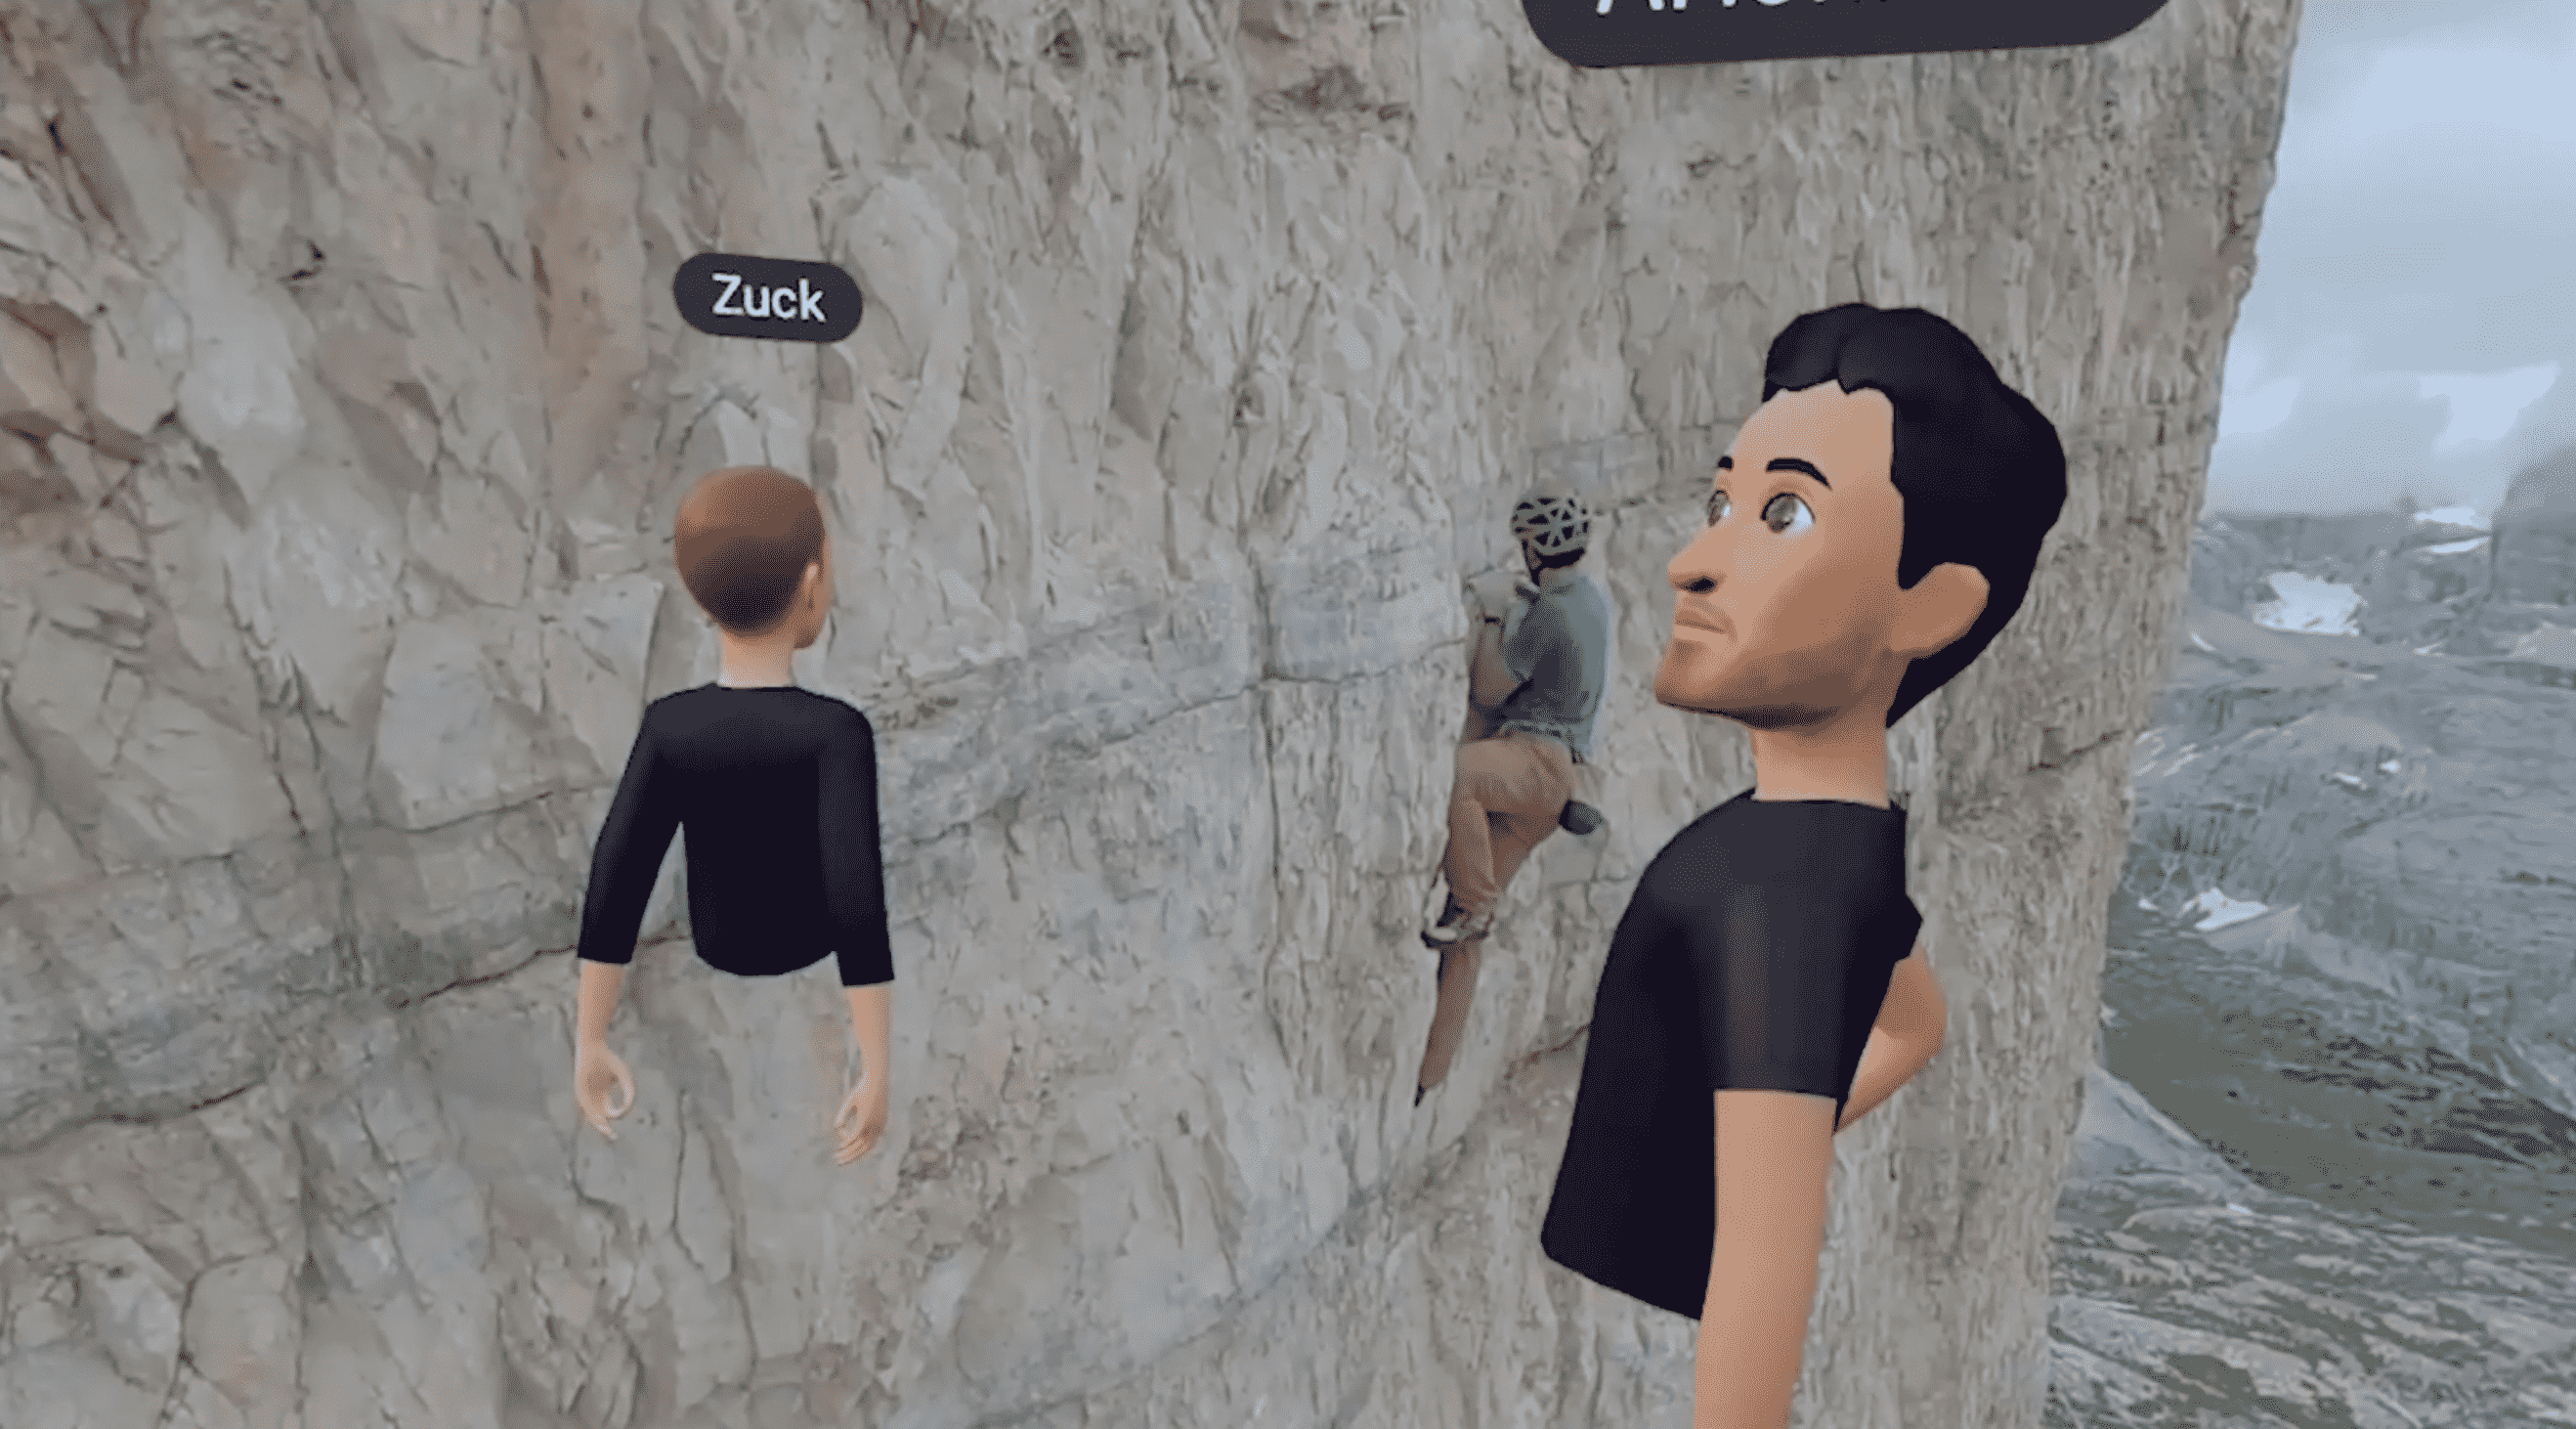 Les avatars de Mark et Alex regardent une vidéo d'Alex escaladant une falaise